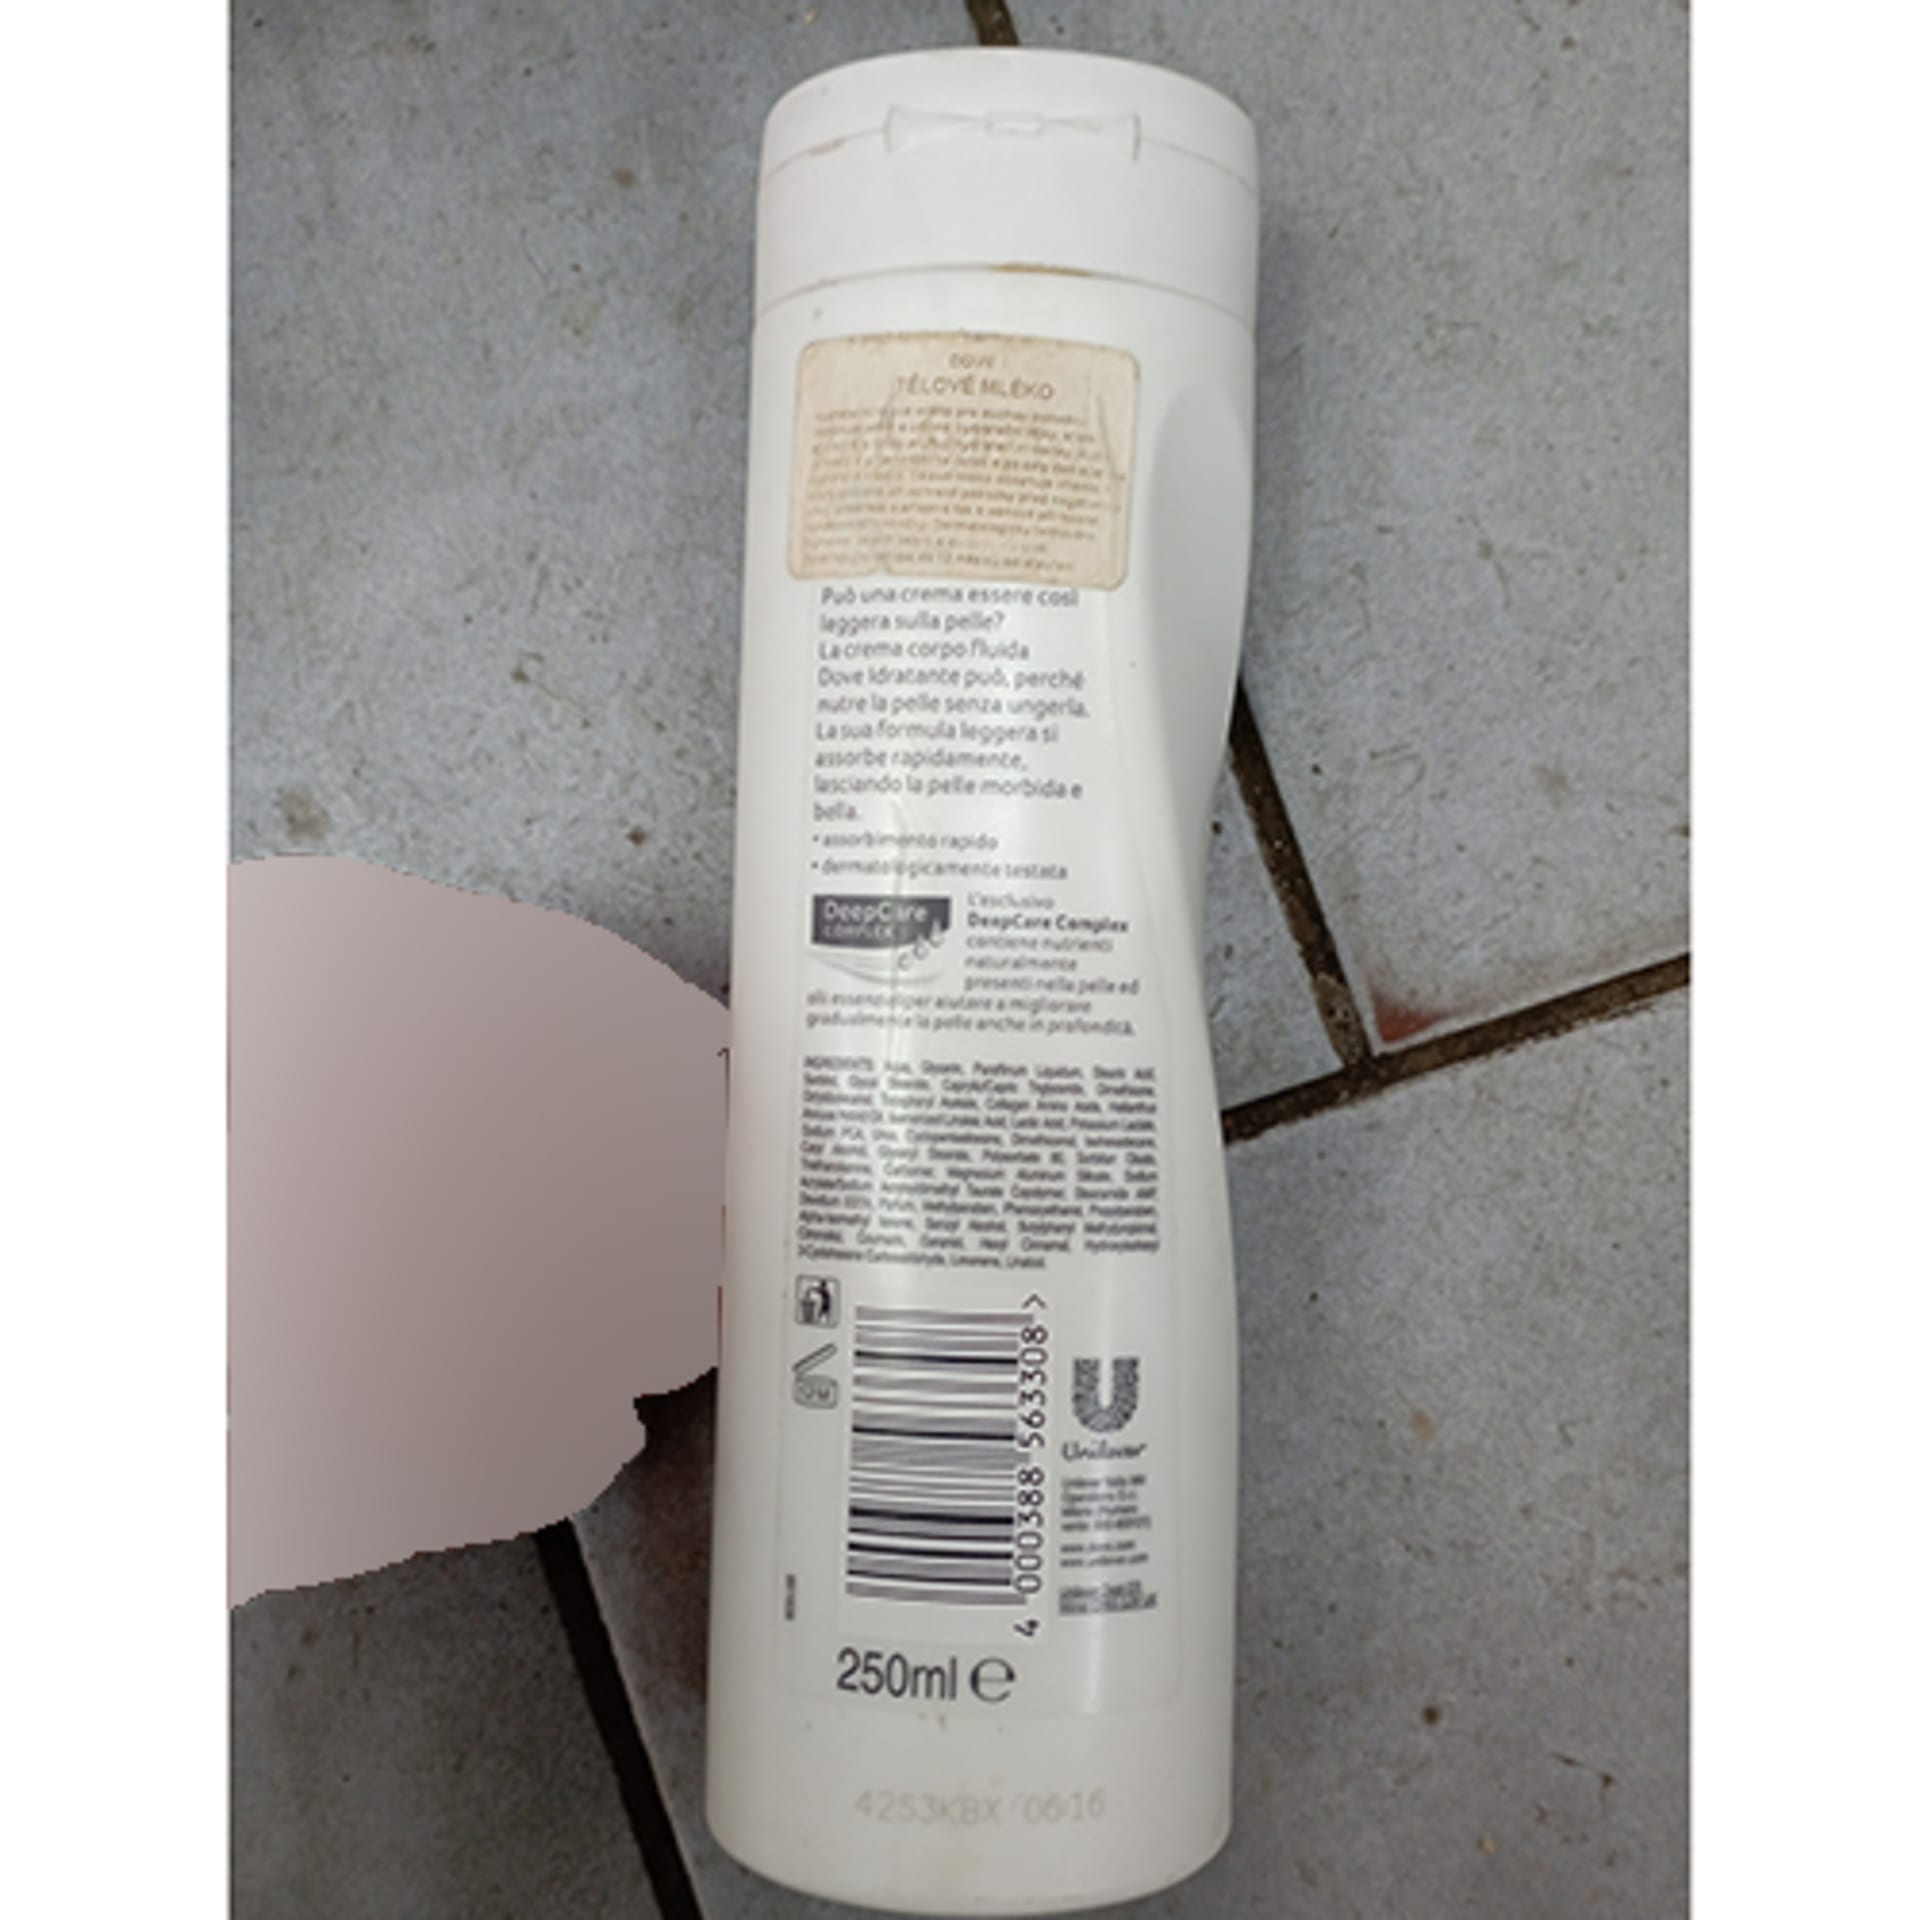 Látka je v tělovém mléku Dove s čárovým kódem 4000388563308, které je původem z Itálie.